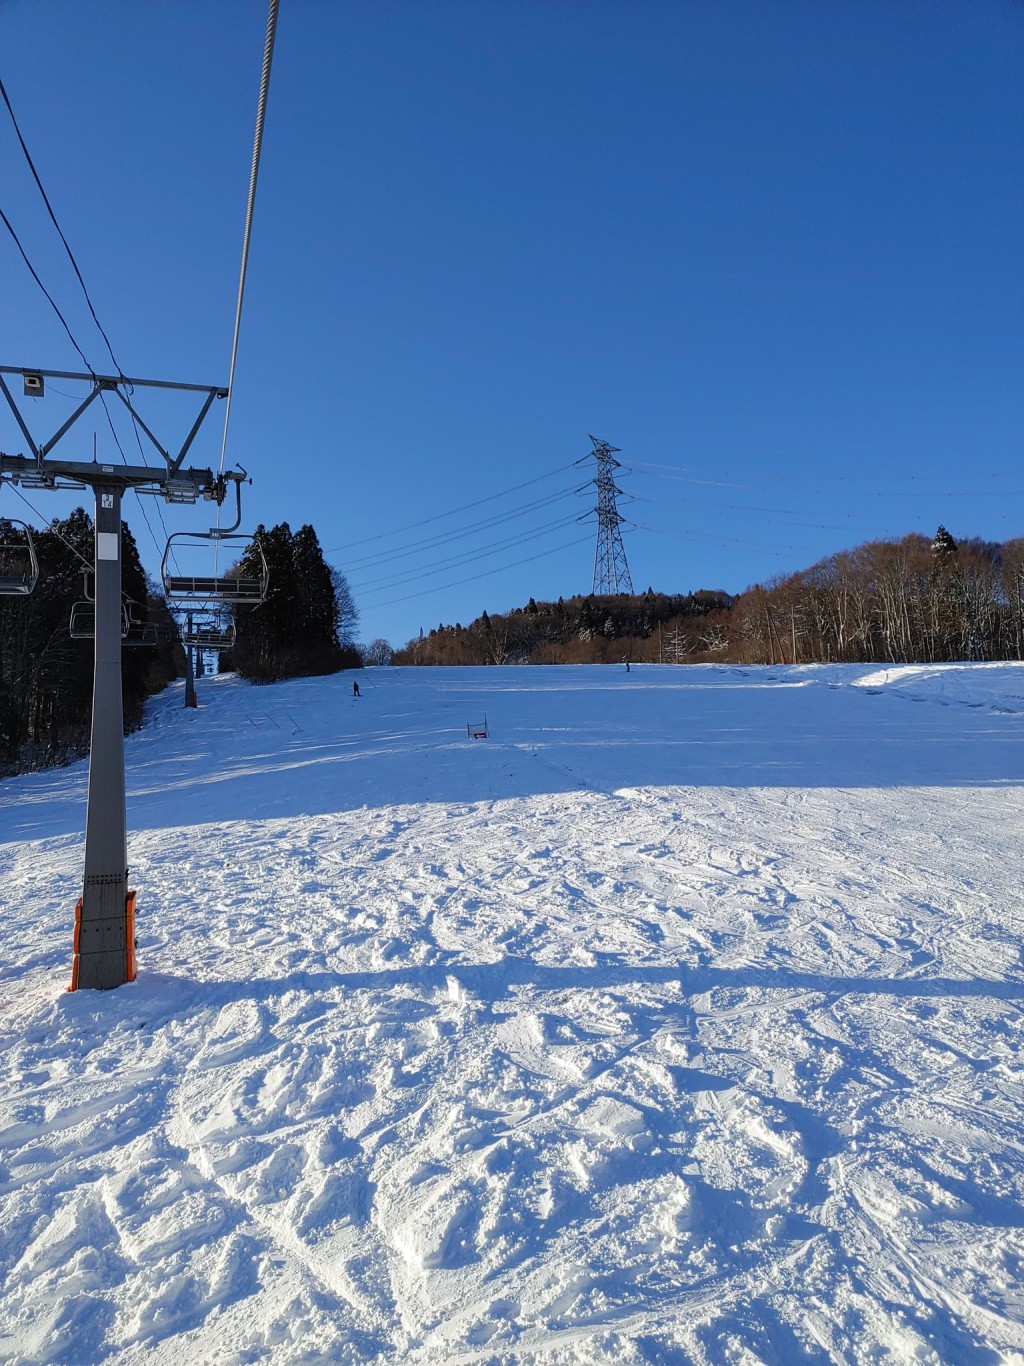 有在新舄的中国滑雪教练指，游客绝不可进入滑雪场禁止进入的雪道滑雪。社交平台X